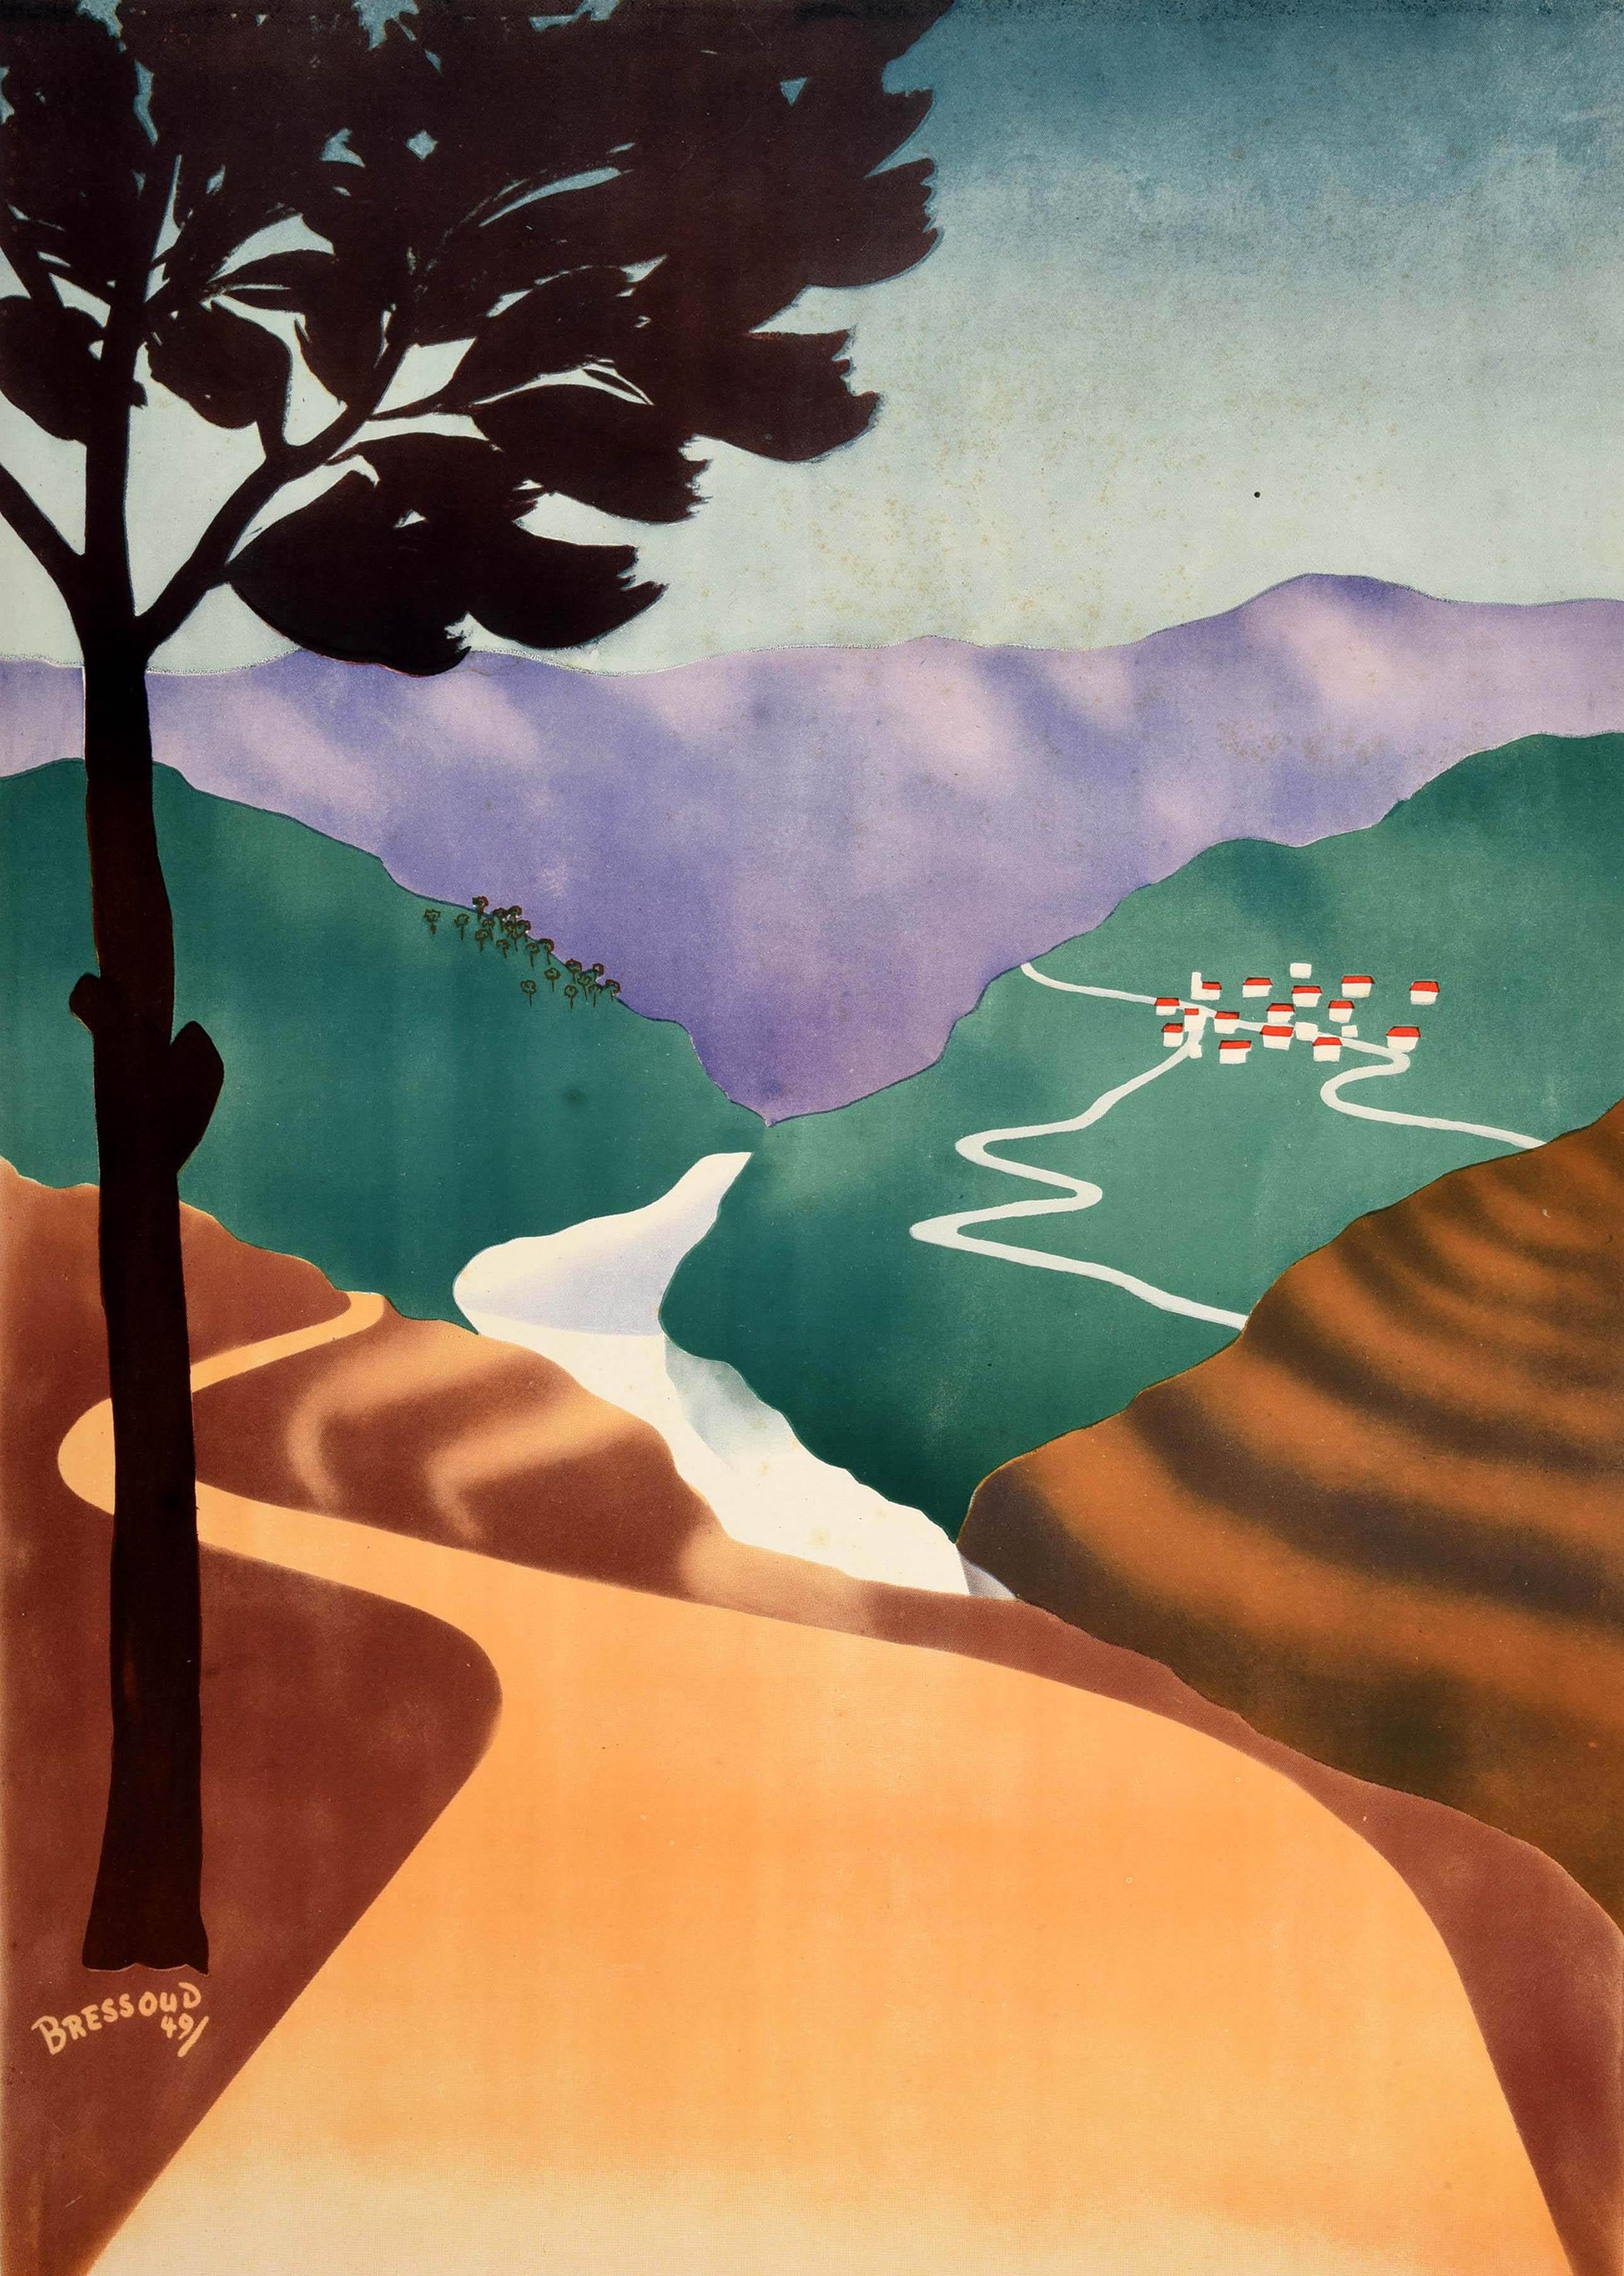 Original Vintage Nahost-Reiseplakat für den Libanon - To The Cool Mountain Air The Lebanese Way - mit einer malerischen Darstellung eines Weges, der sich durch die Landschaft in die Ferne schlängelt, mit sanften Hügeln und einem Fluss, der durch ein